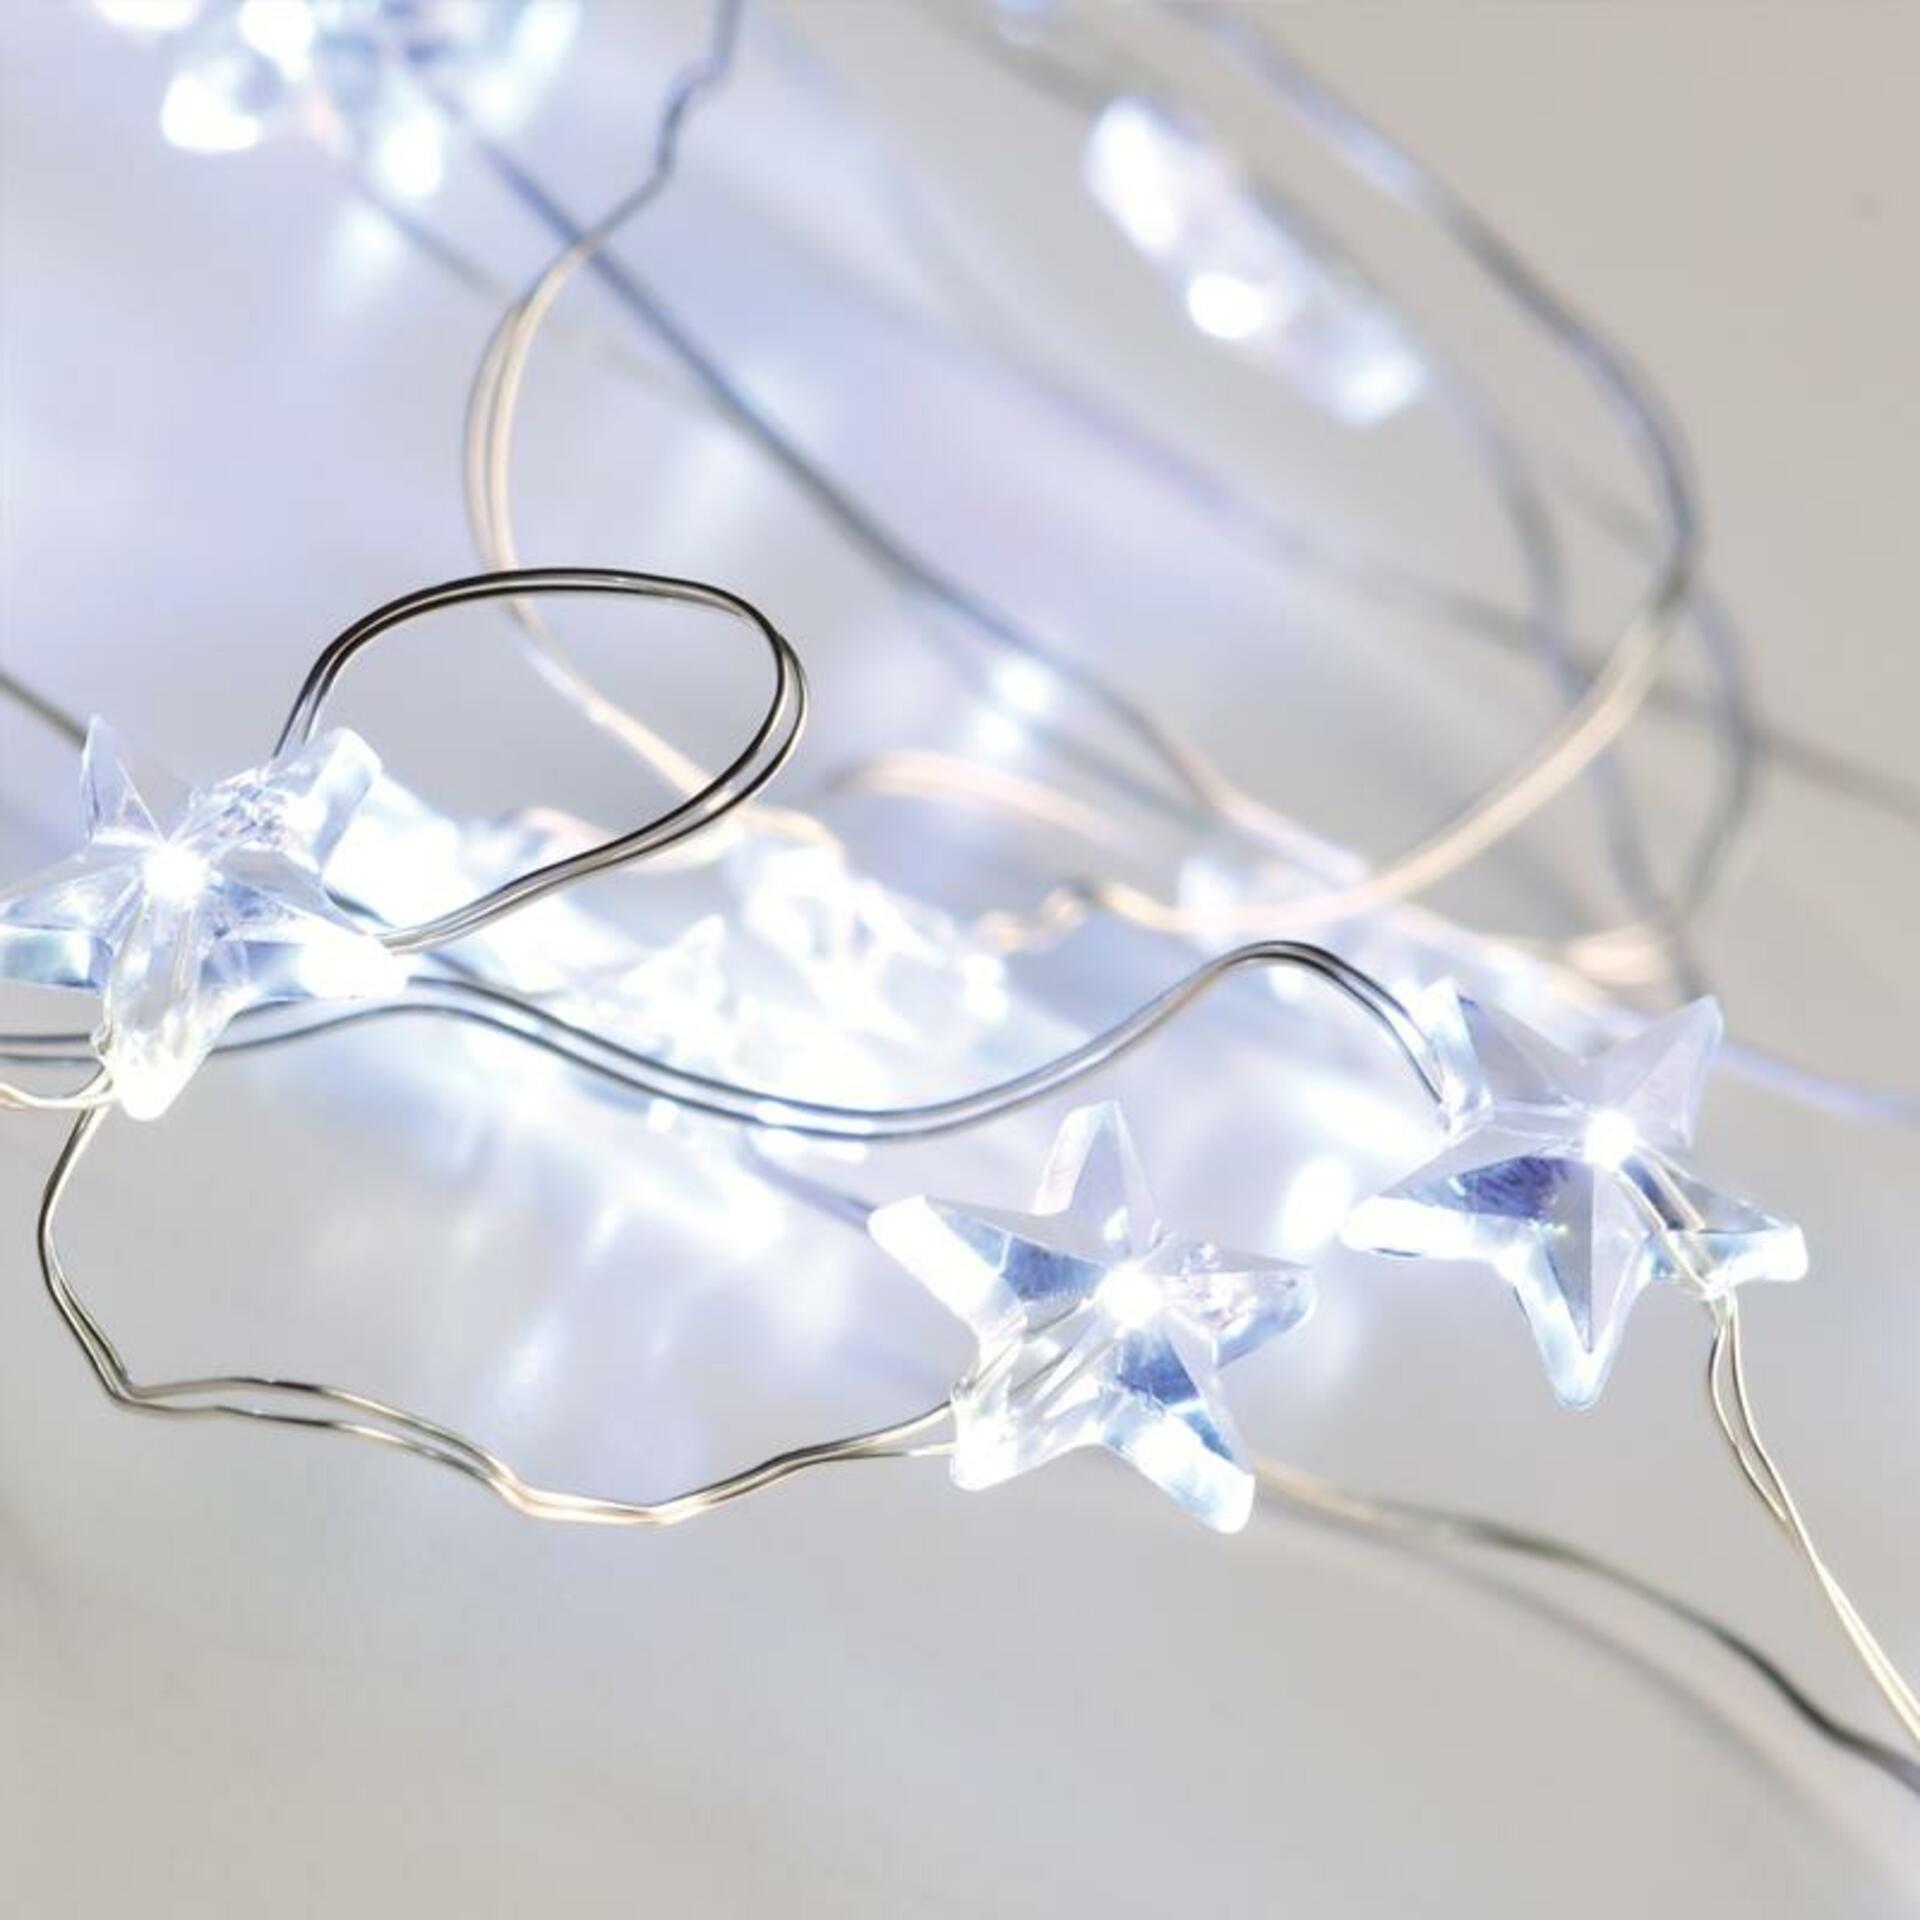 ACA Lighting hvězdy 20 LED dekorační řetěz studená bílá, stříbrný měďený drát na baterie 2xAA IP20 2m+10cm 1.2W X01202112